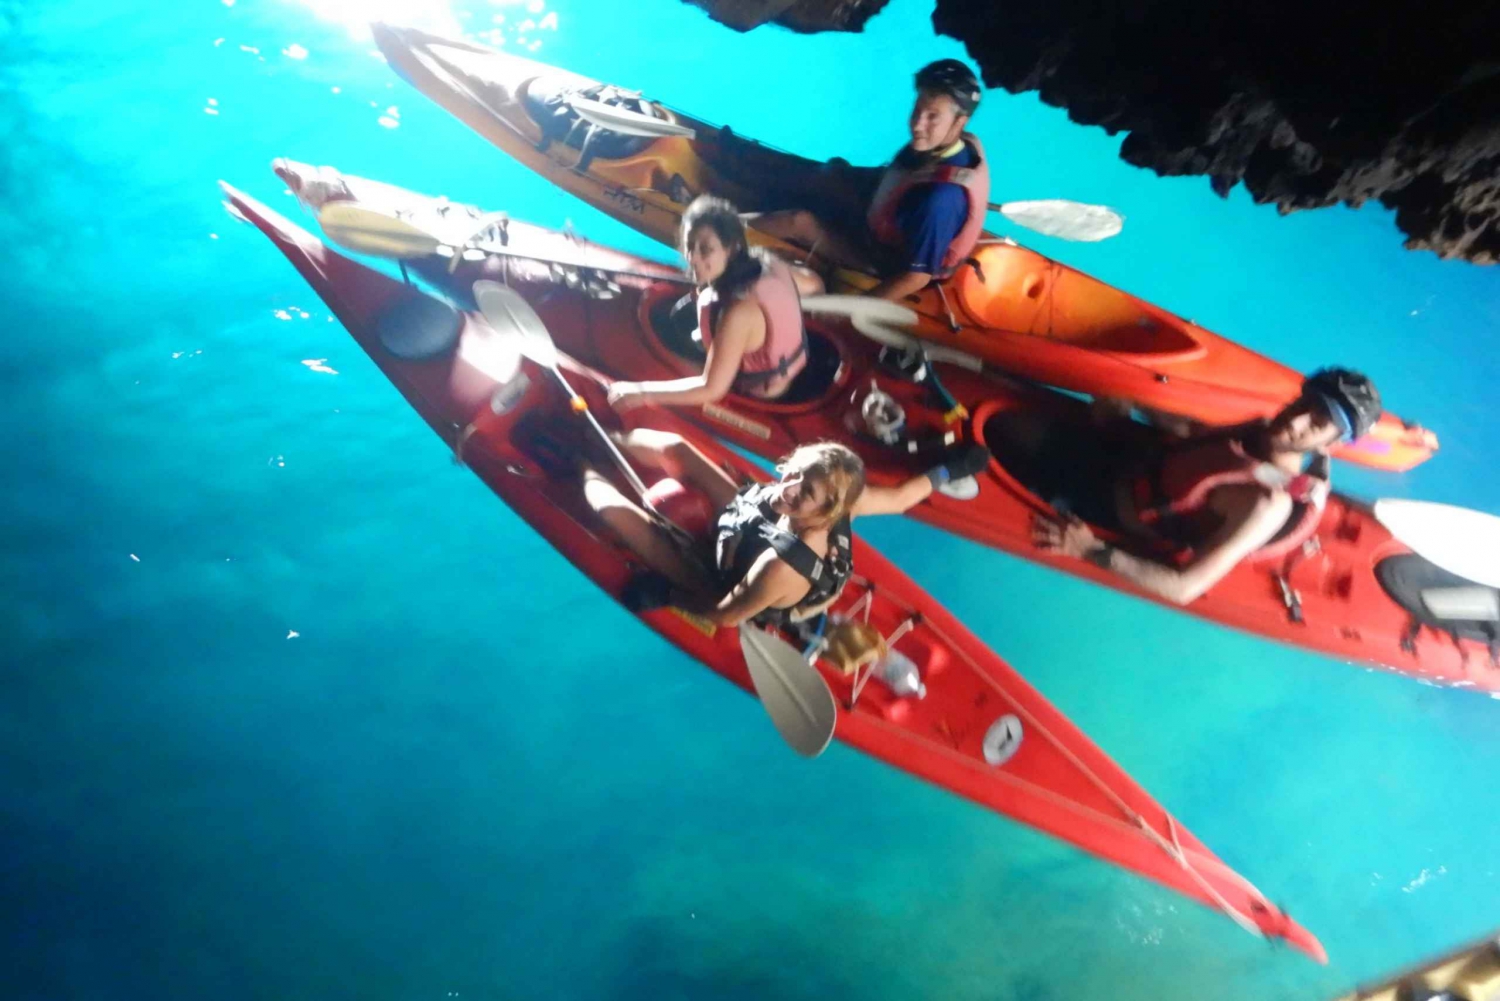 Da Vulcano: Avventure in kayak e coasteering